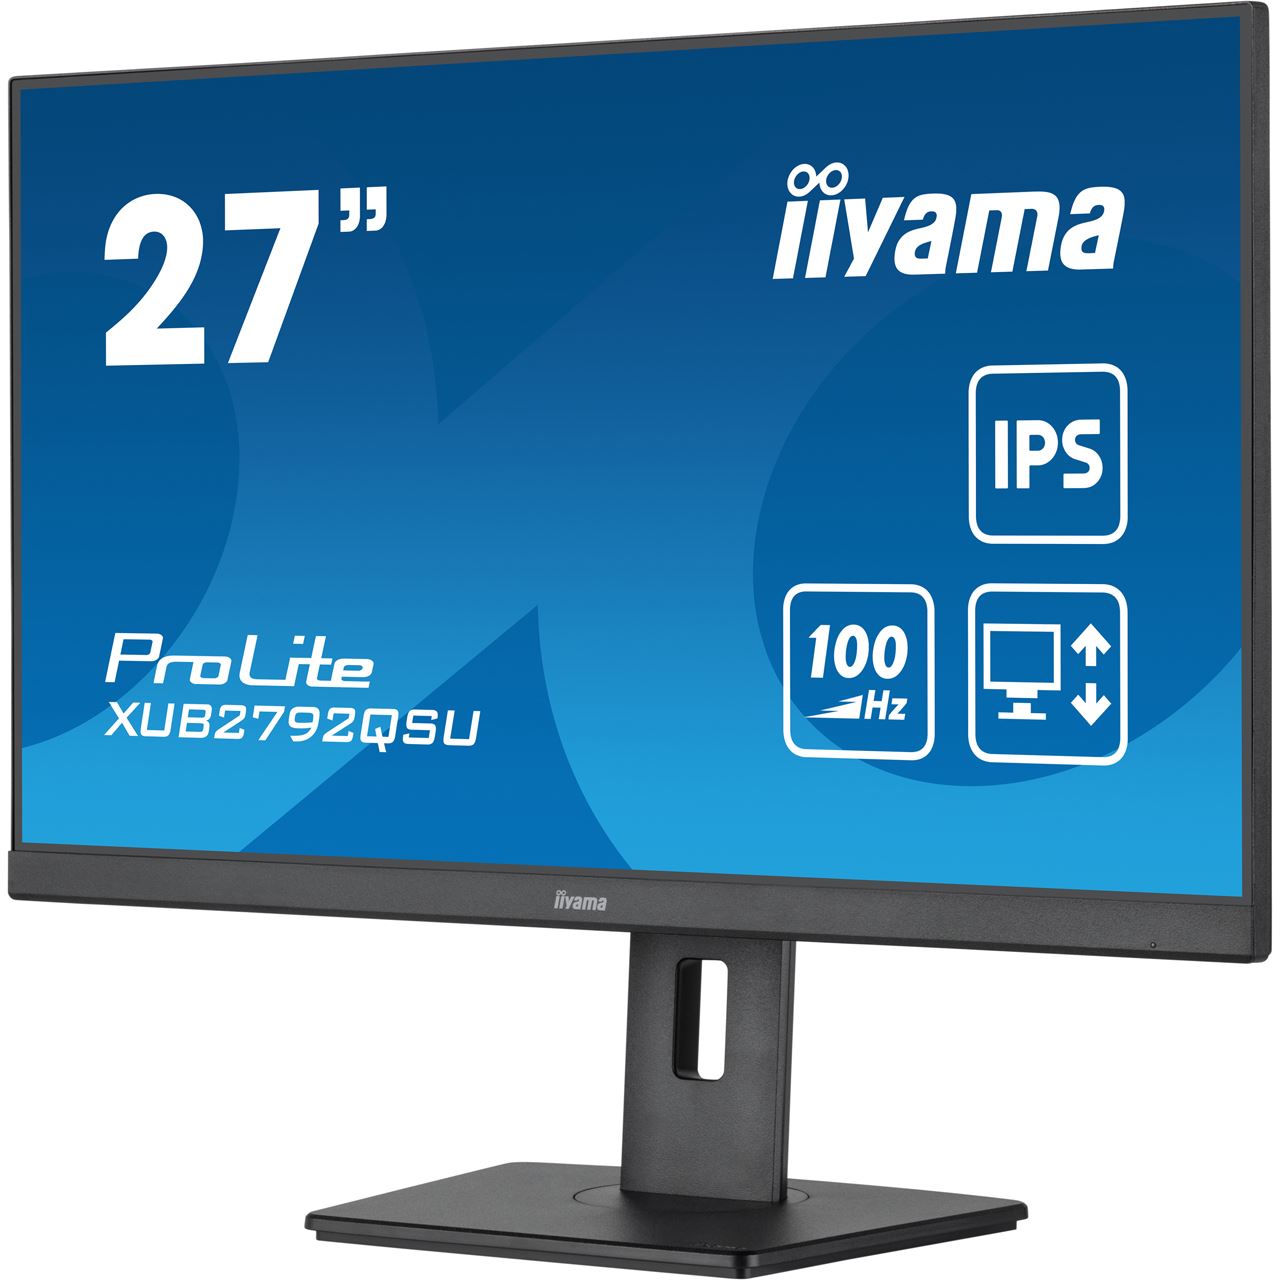 iiyama 27 '' (68.5 cm) Monitor mit WQHD-Auflösung, IPS-Panel-Technologie, 100Hz Bildwiederholrate und einem 150 mm höhenverstellbaren Standfuß [Energieklasse F] (XUB2792QSU-B6)